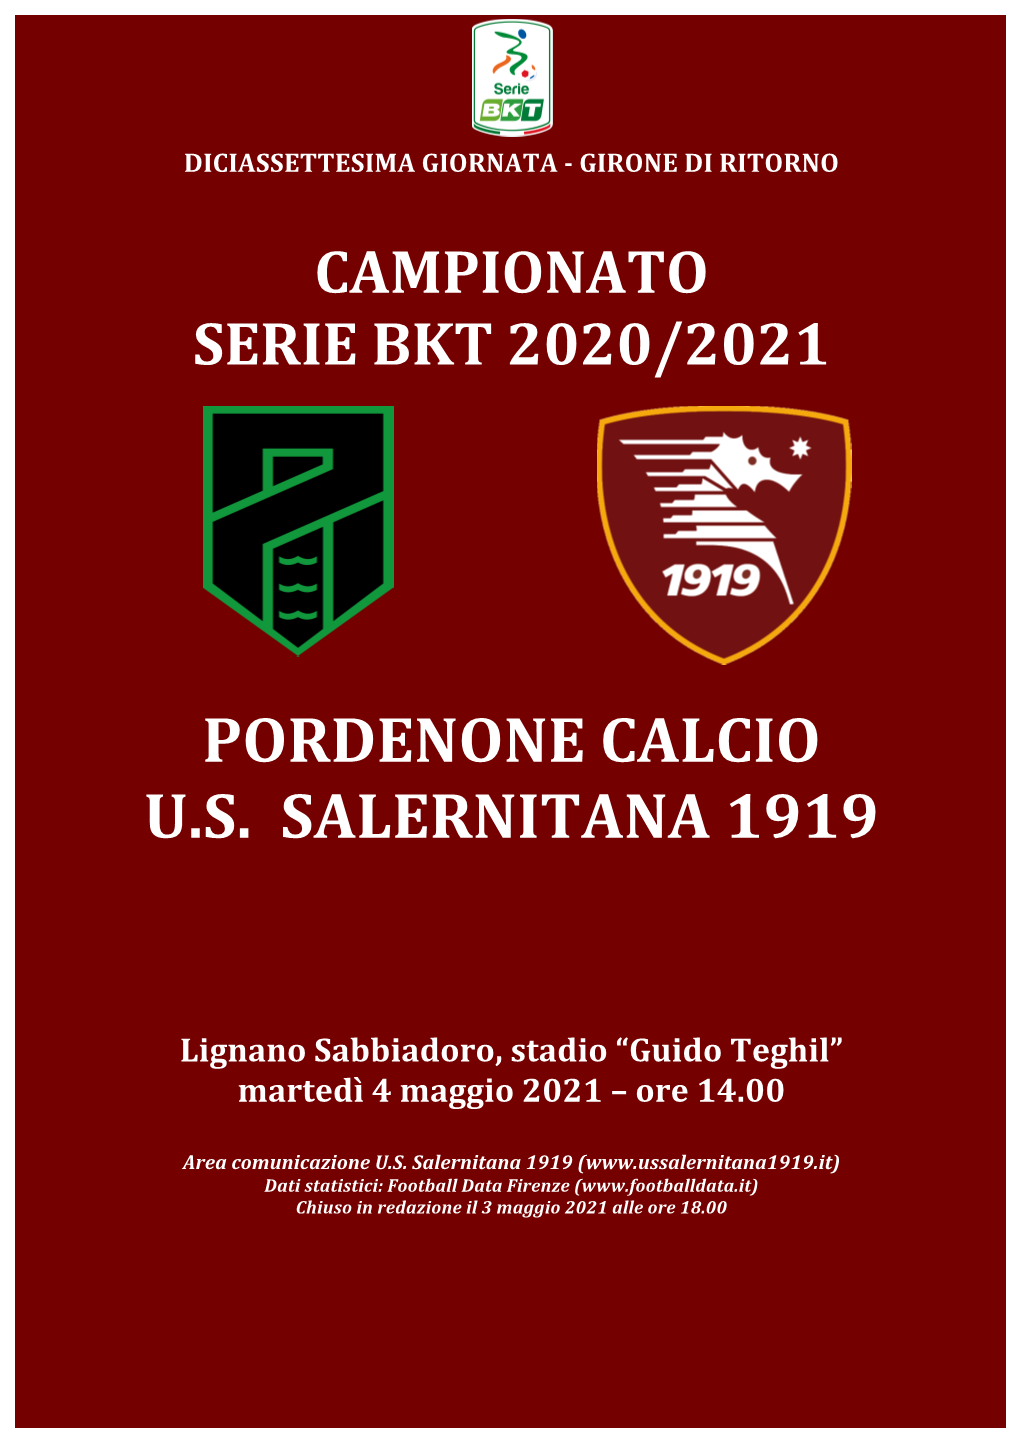 Pordenone Calcio U.S. Salernitana 1919